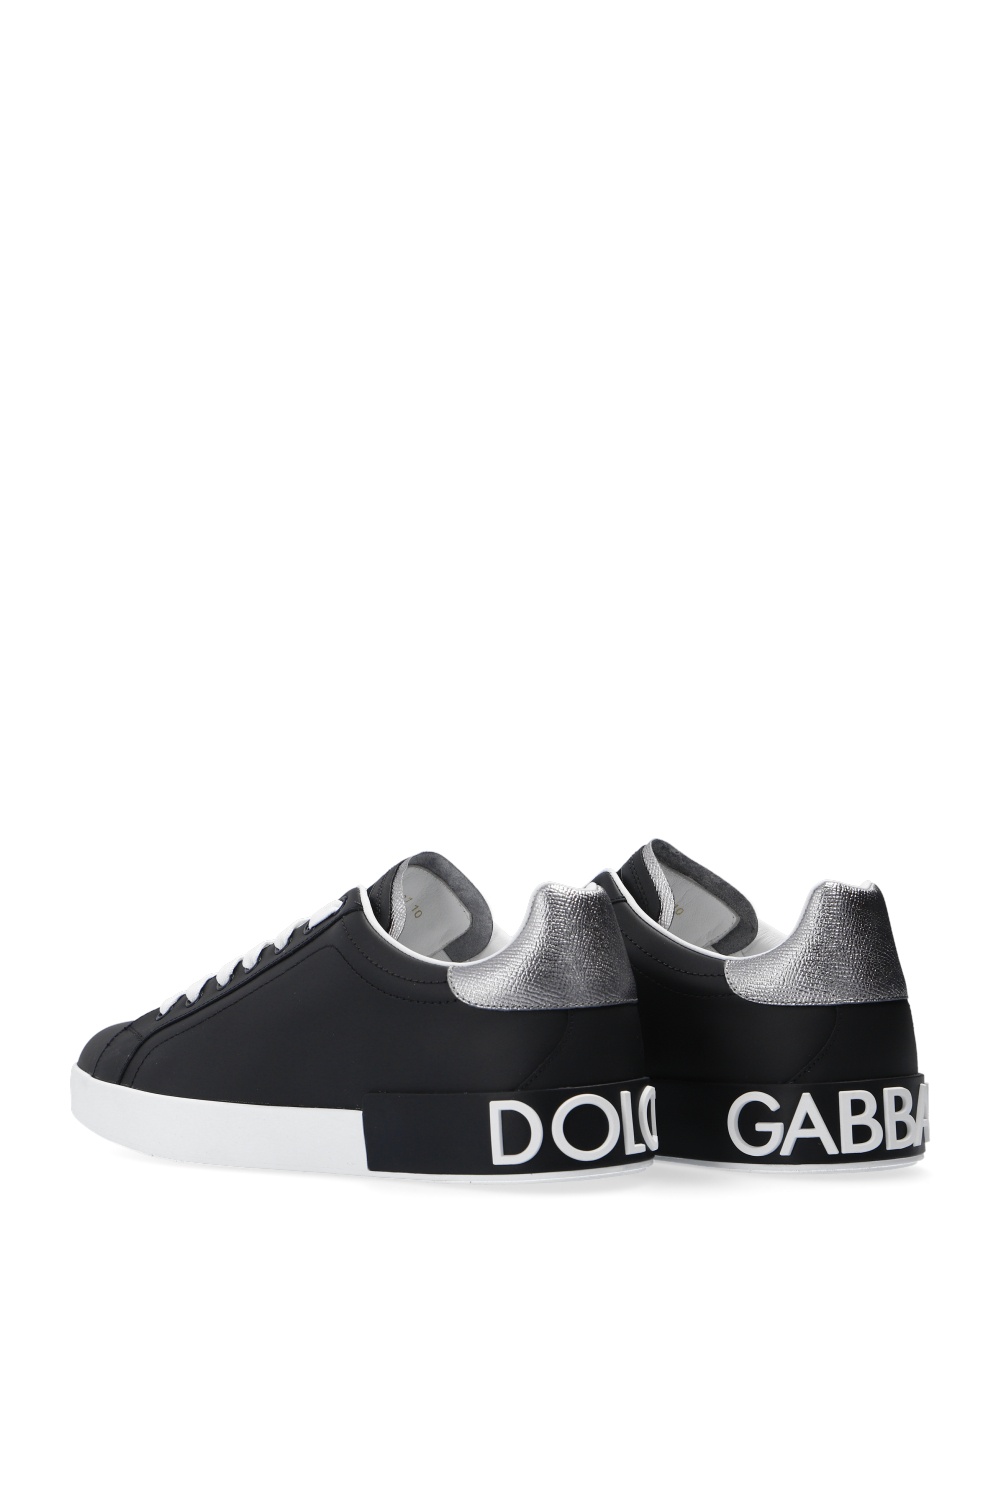 Βιώσιμη Dolce & gabbana IPhone 7 8 ‘Portofino’ sneakers